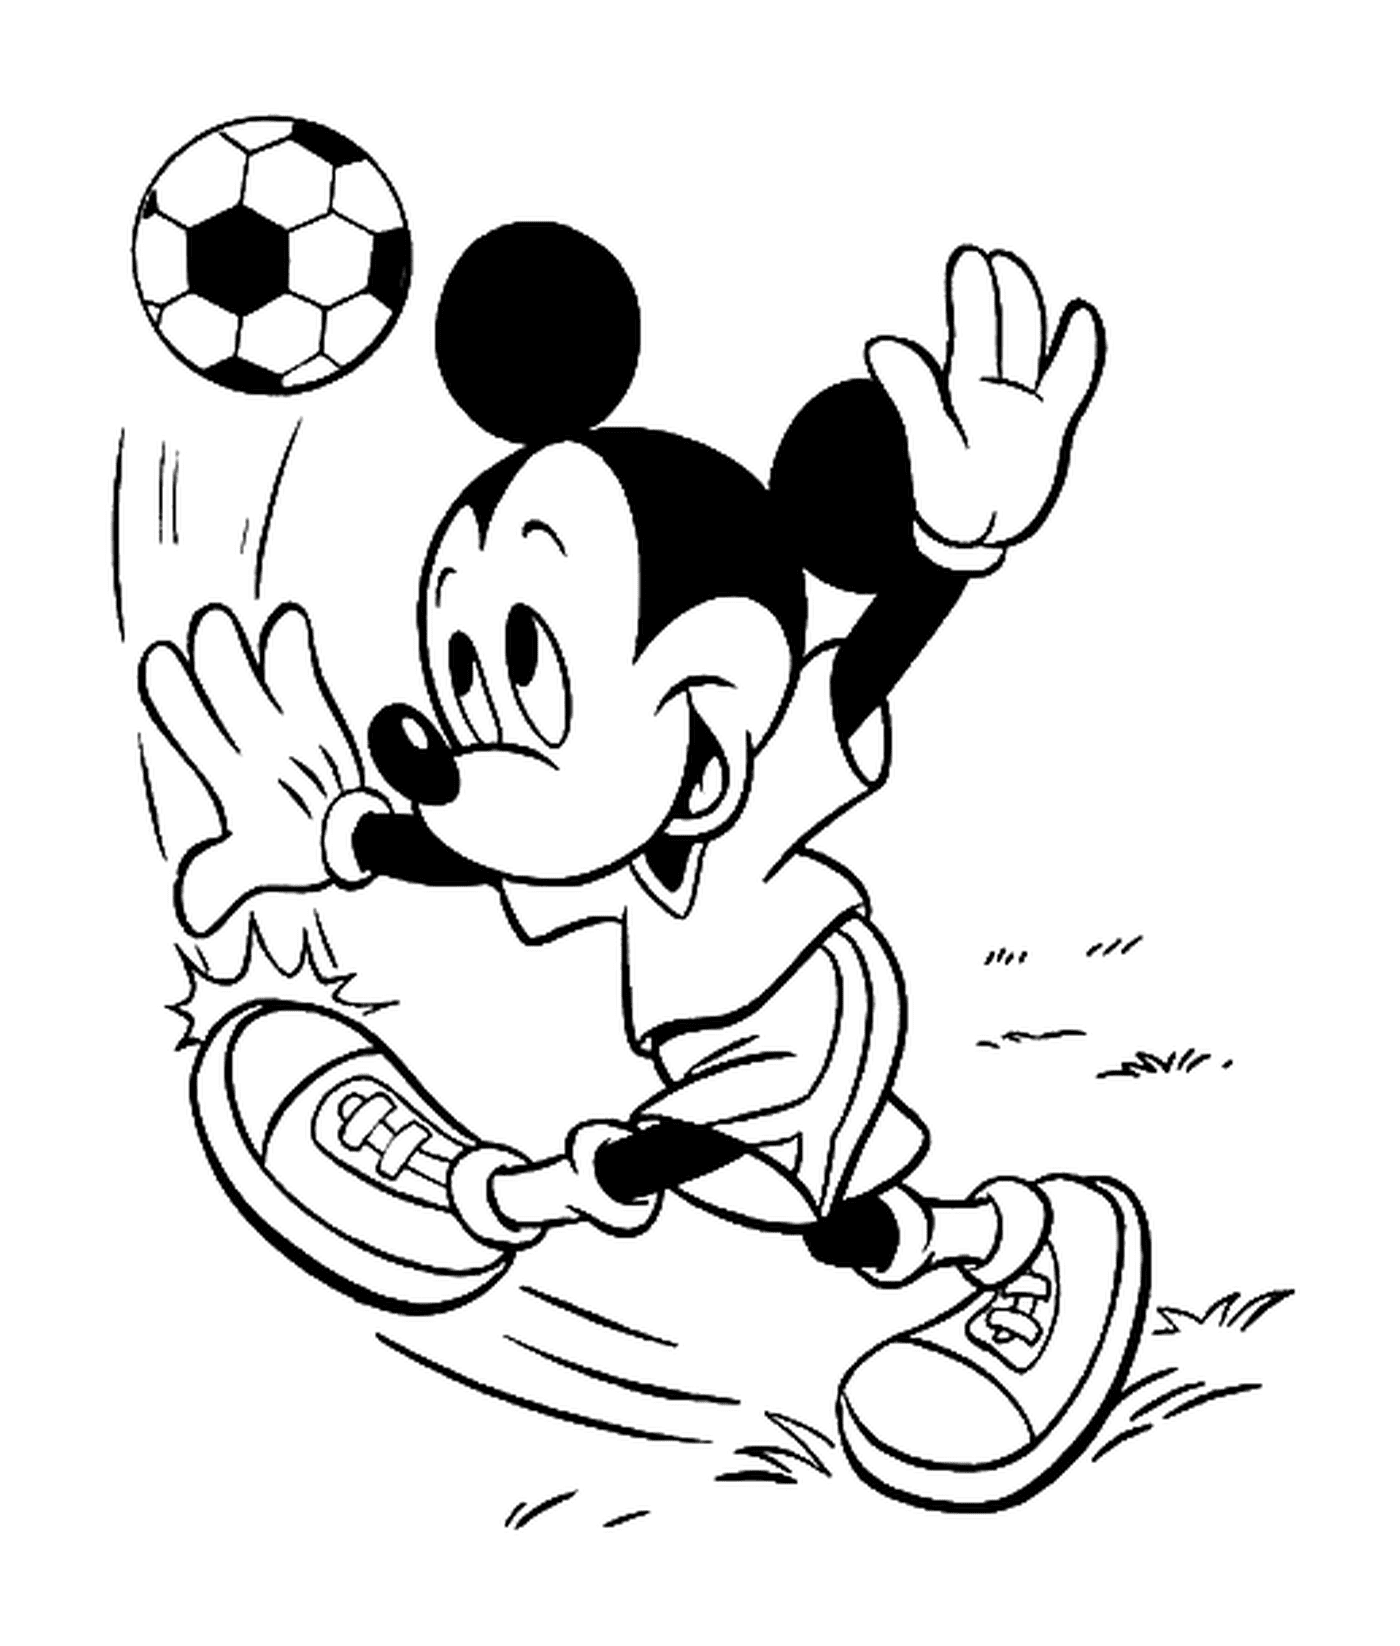  Микки играет в футбол с футбольным мячом 